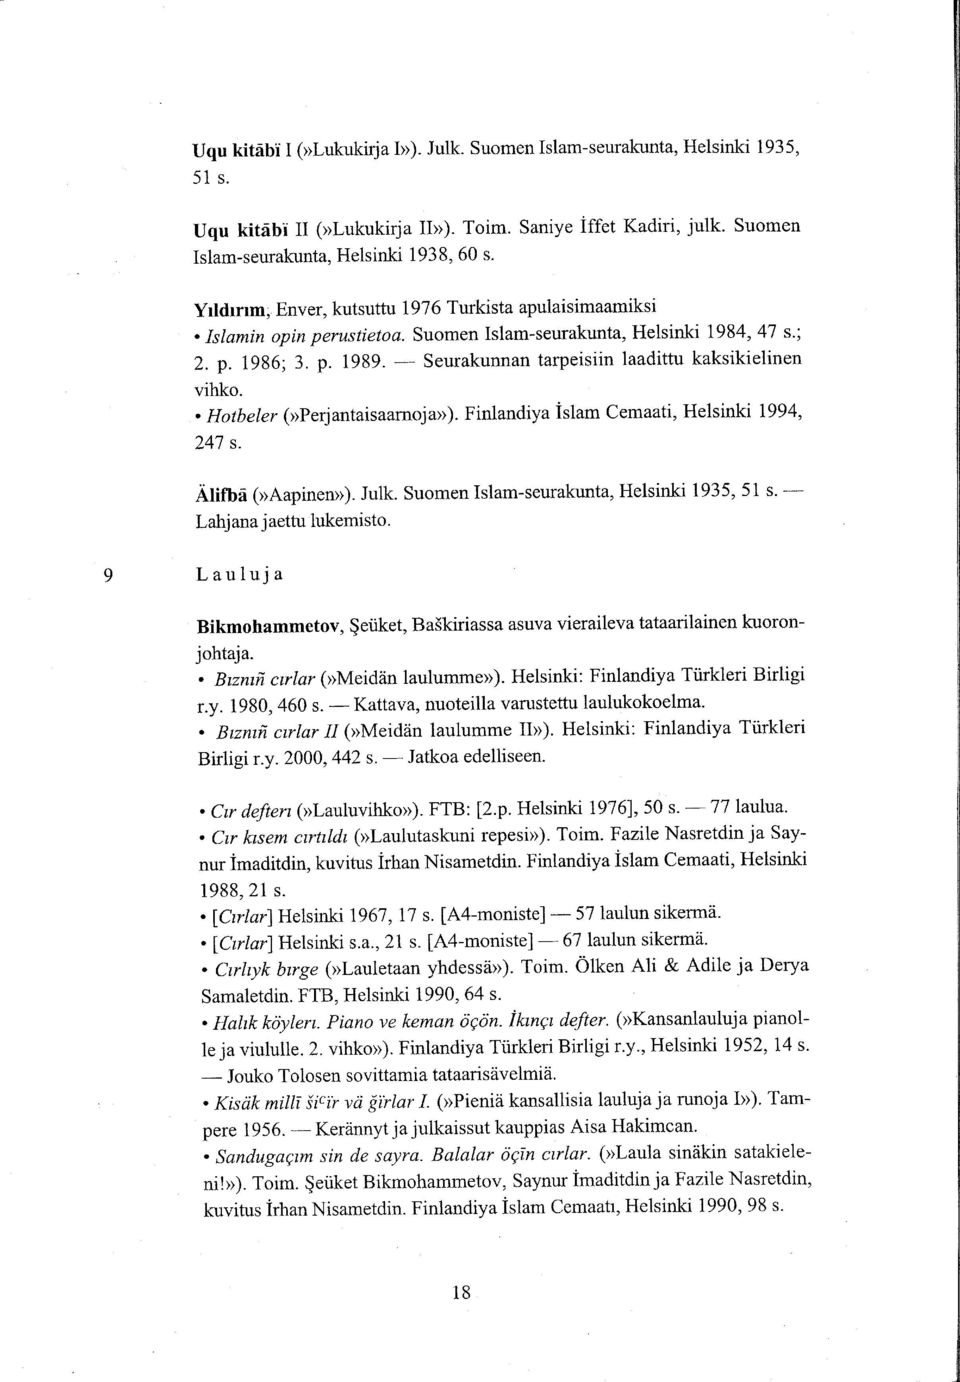 Seurakunnan tarpeisiin laadittu kaksikielinen vihko.. Hotbeler (>Perjantaisaarnoju). Finlandiya islam Cemaati, Helsinki 1994, 247 s. nnrte (>Aapinen>). Julk.